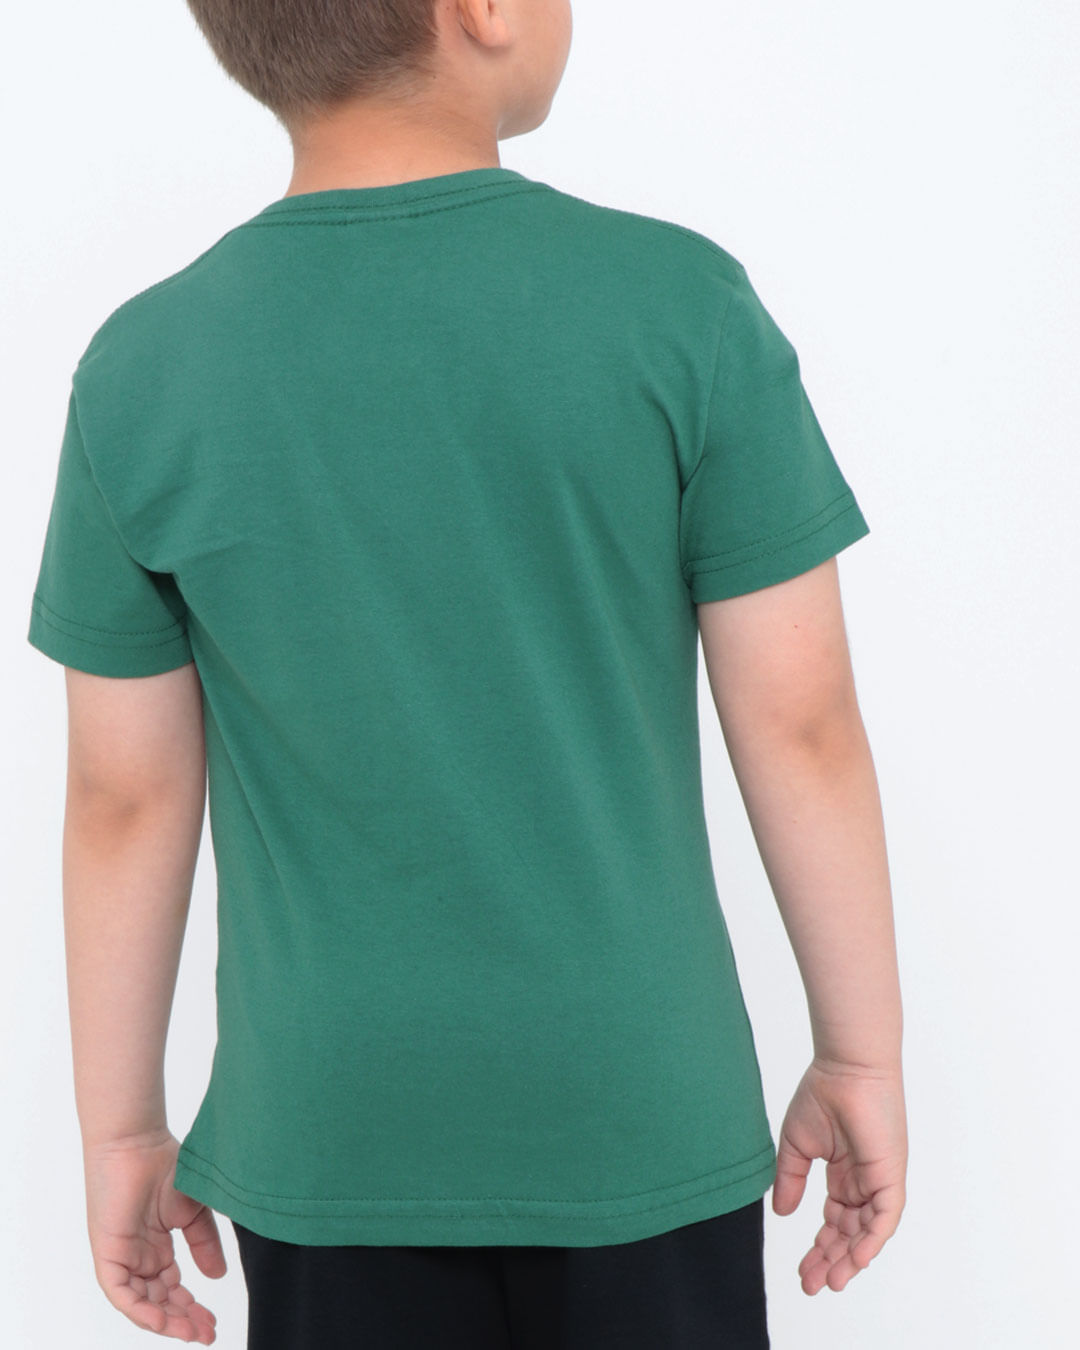 Camiseta-25003-Mc-M412-Hulk---Verde-Escuro